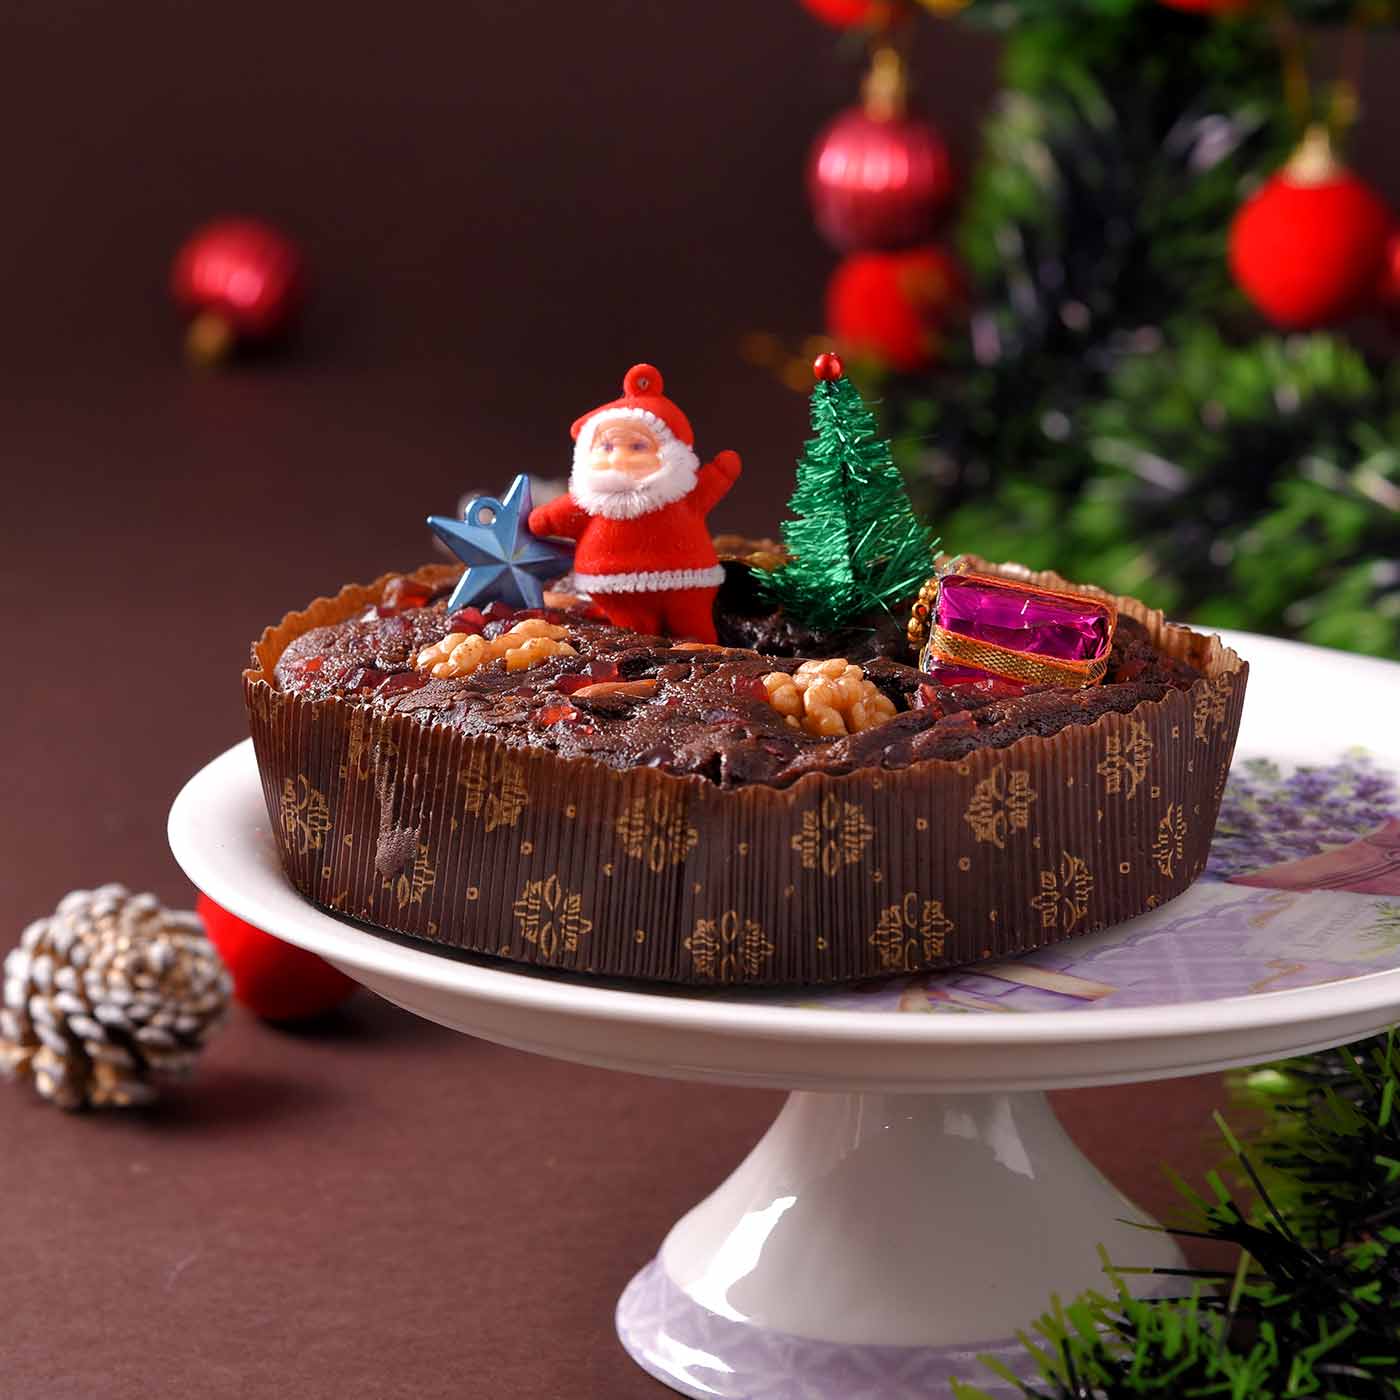 Christmas special: A special plum cake recipe for you! - Rediff.com